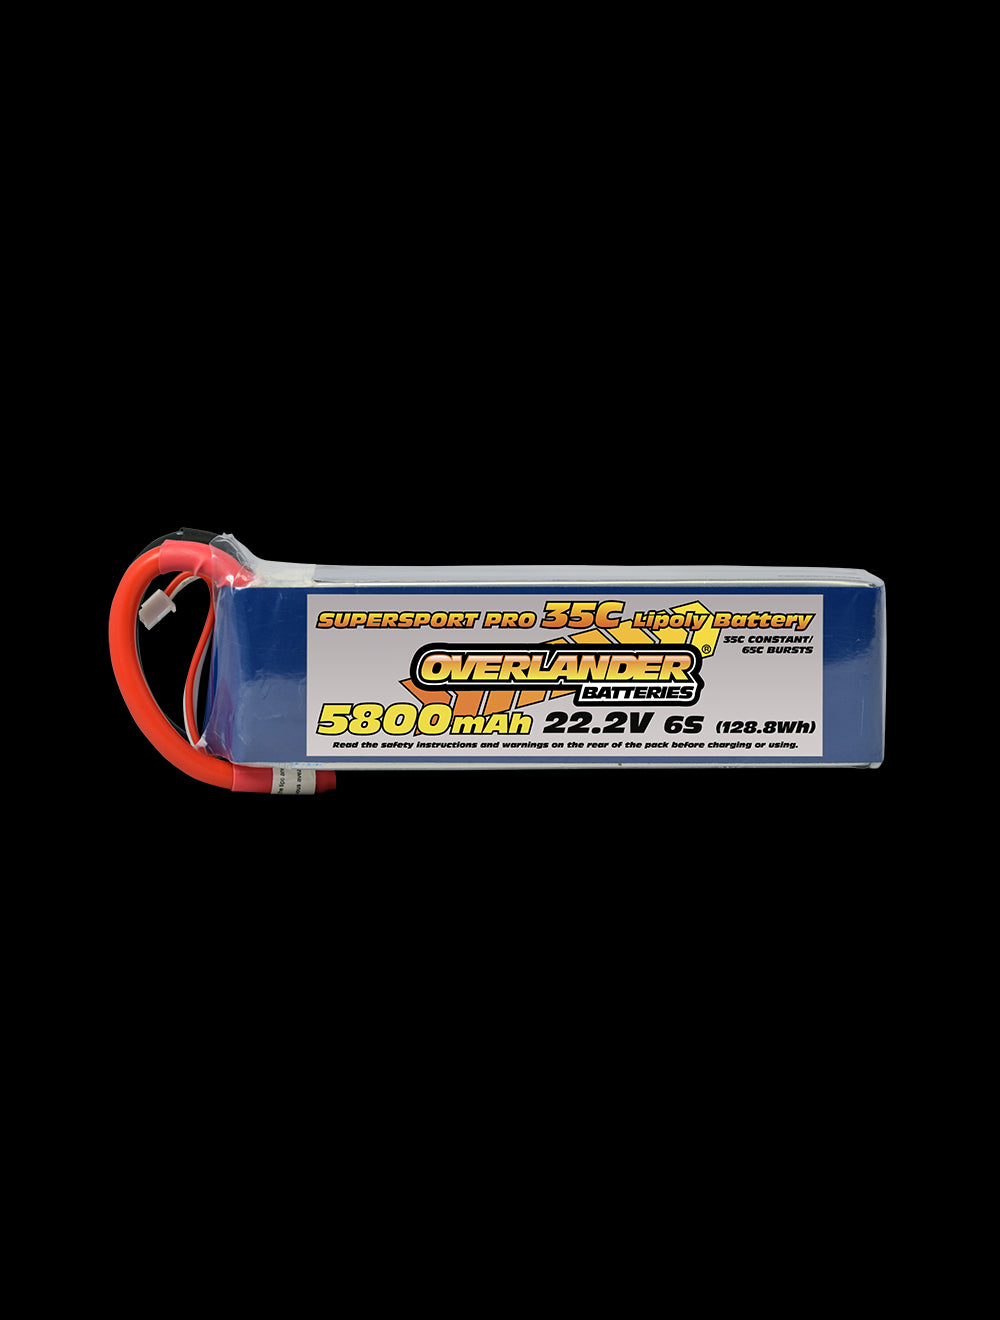 Overlander 5800mAh 22.2V 6S 35C Supersport Pro LiPo Battery - EC5 Connector 3116